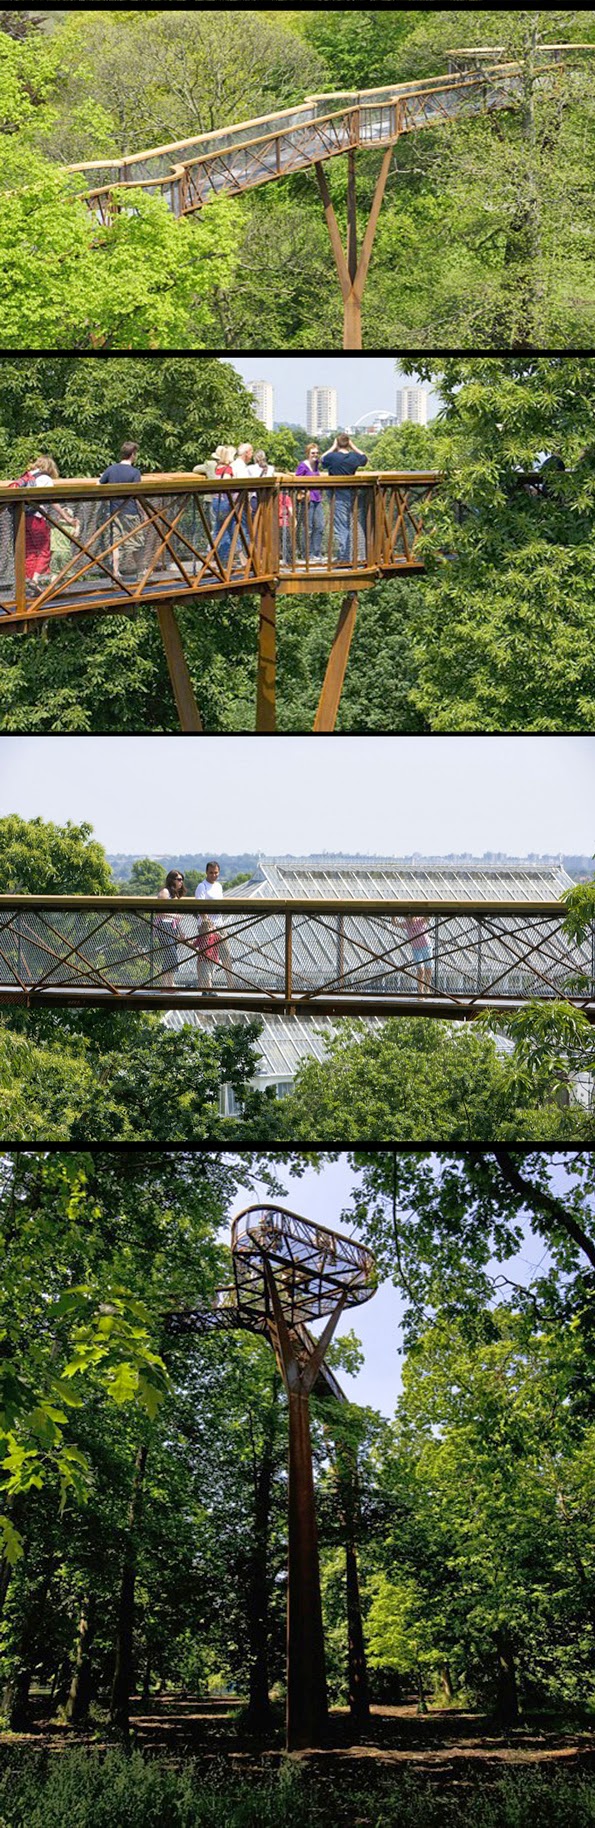 Blog Serius Serius Cool Jambatan Kanopi Taman Kew London 12 Gambar